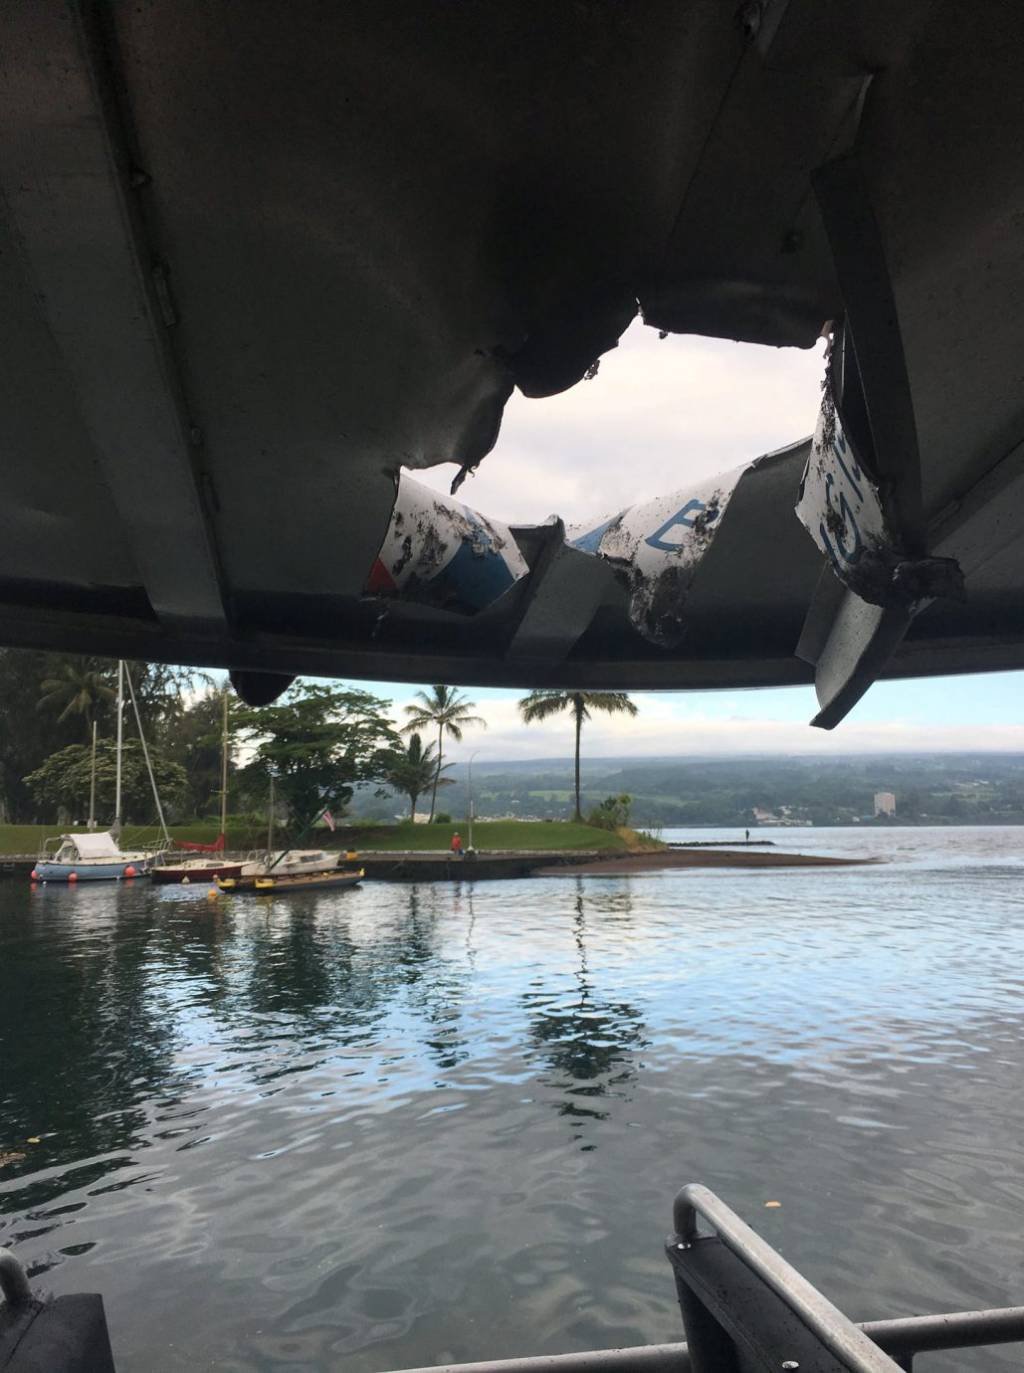 Bomba vulcânica perfura teto de navio e deixa mais de 20 feridos no Havaí